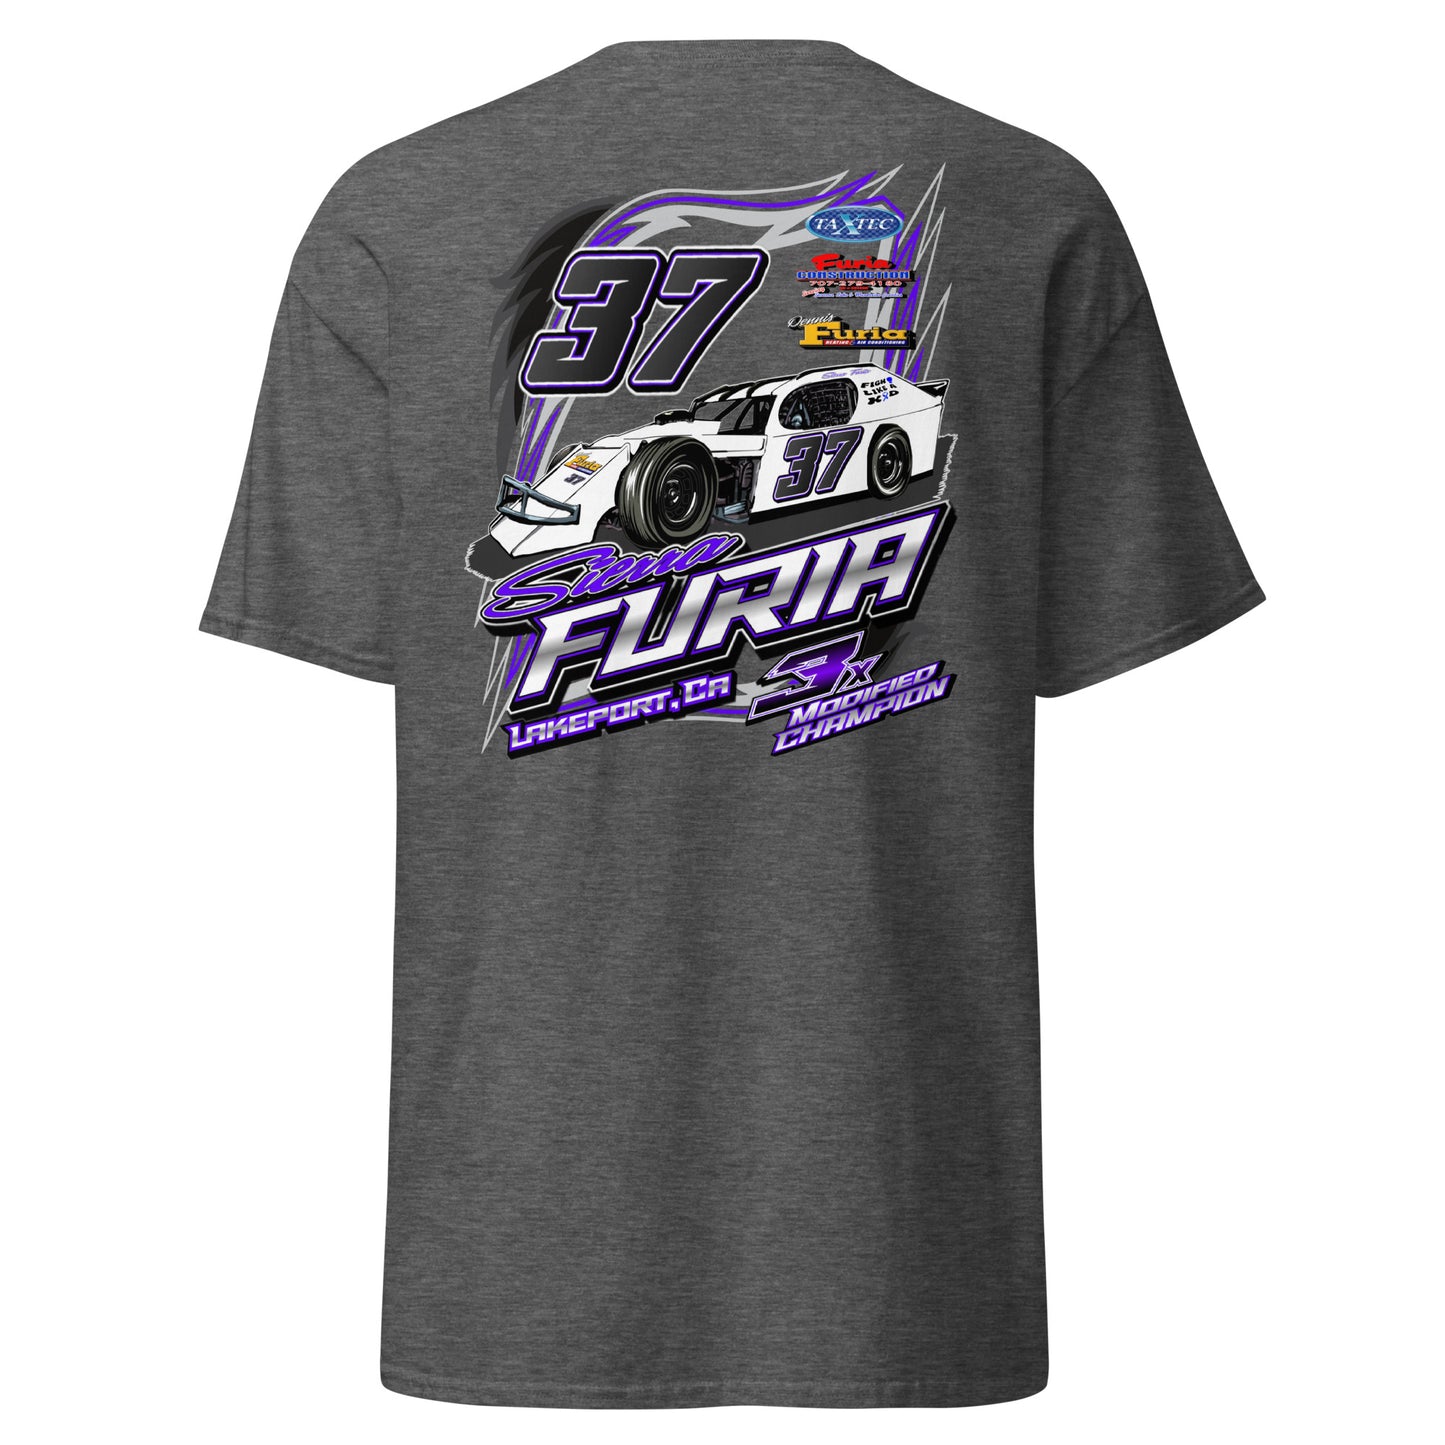 Sierra Furia Adult T-Shirt